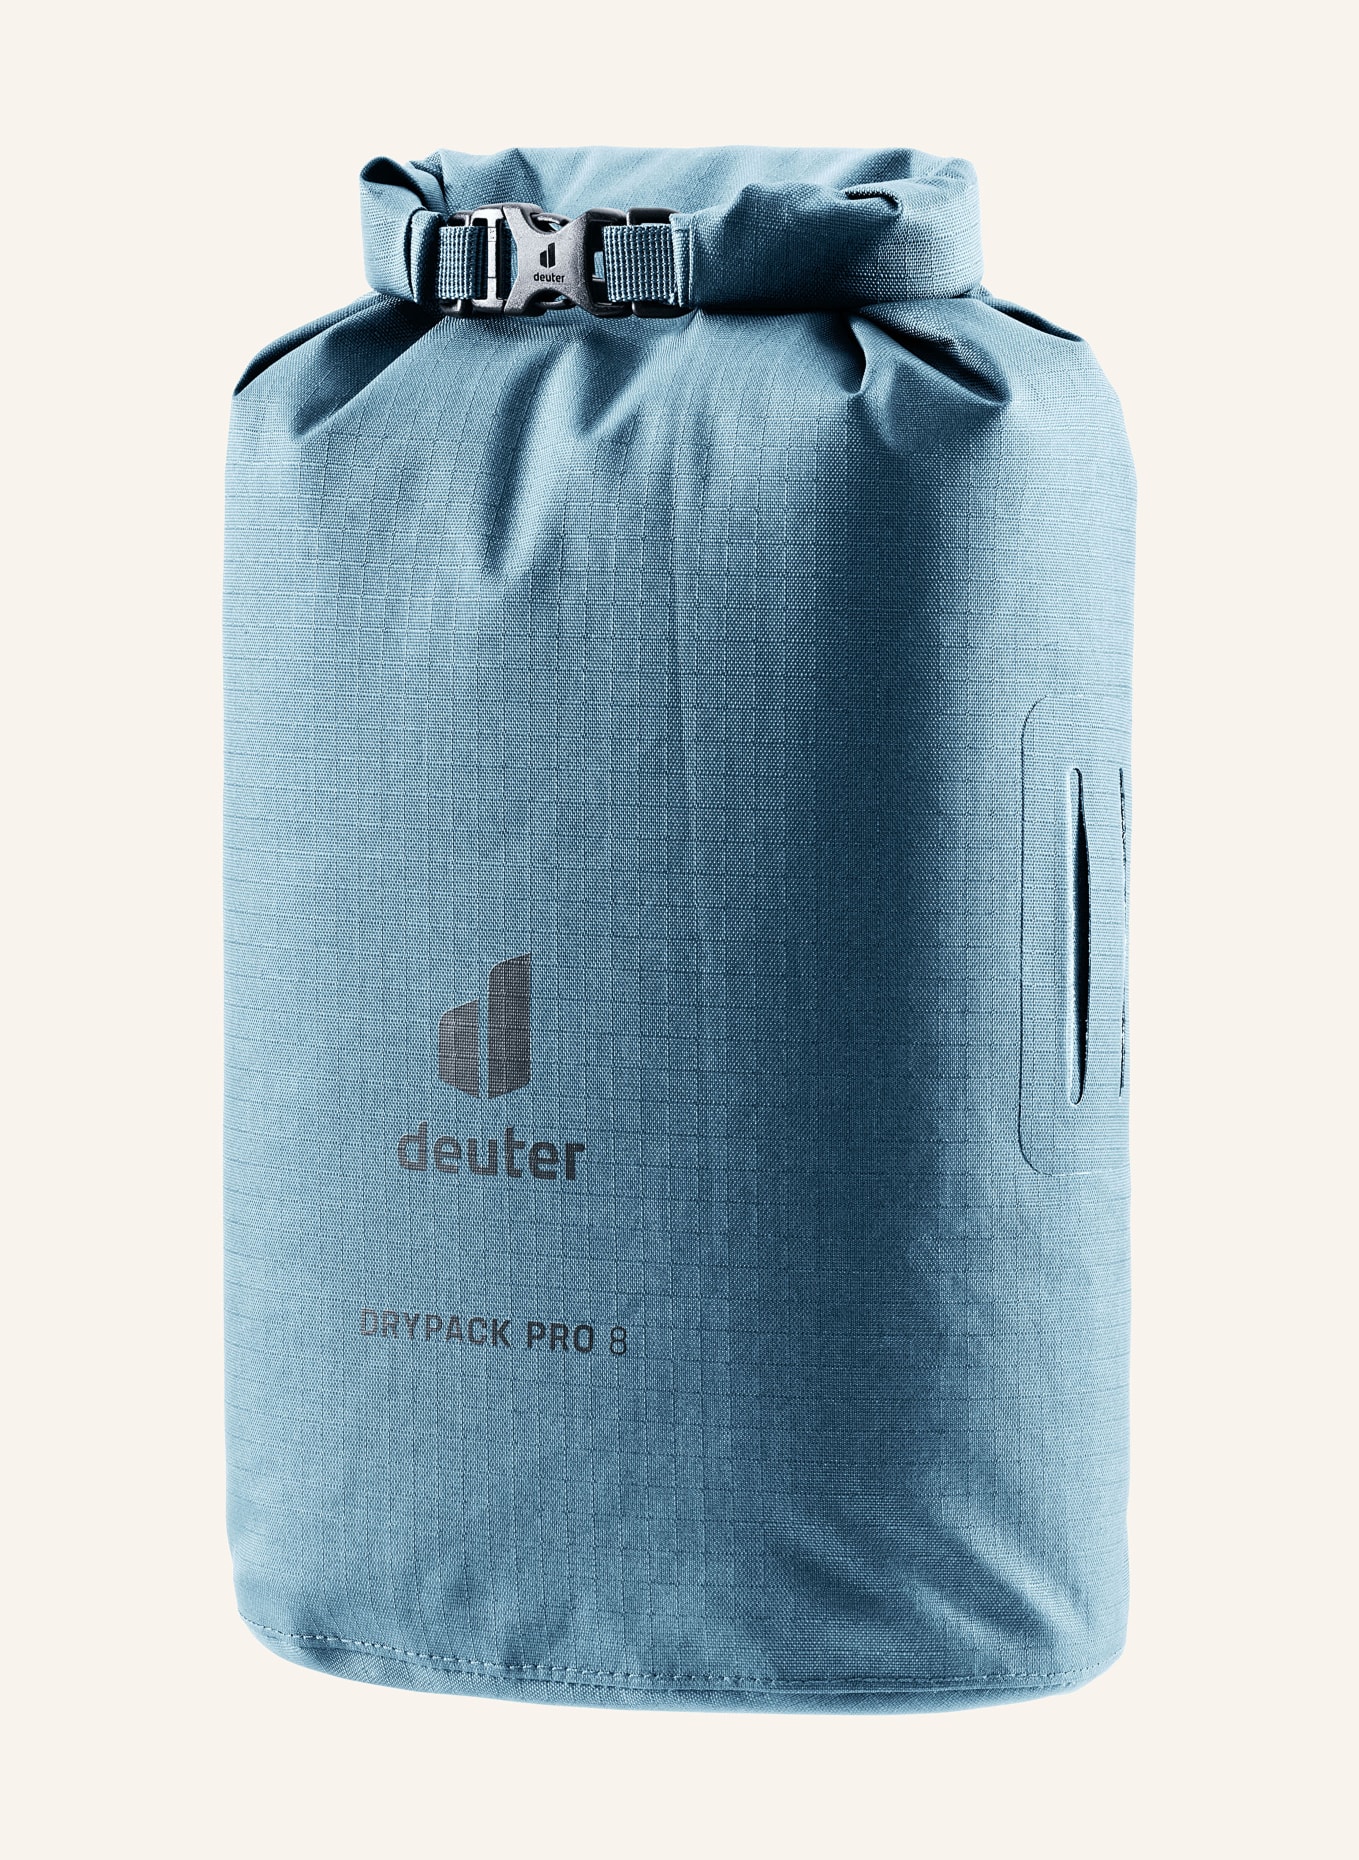 deuter Packing bag DRYPACK PRO 8 8 l, Color: BLUE (Image 1)